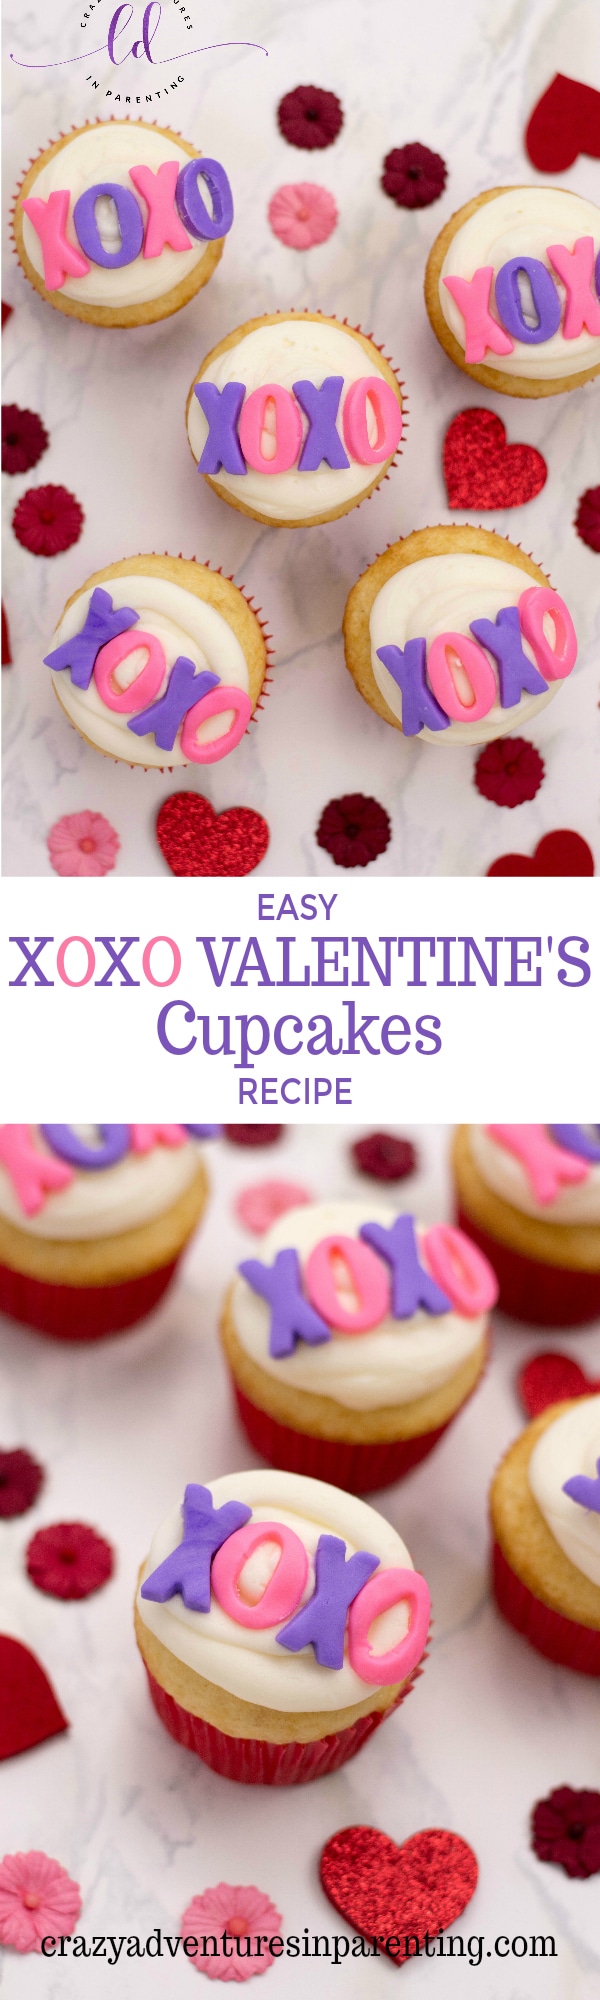 Easy XOXO Valentine's Cupcakes Recipe